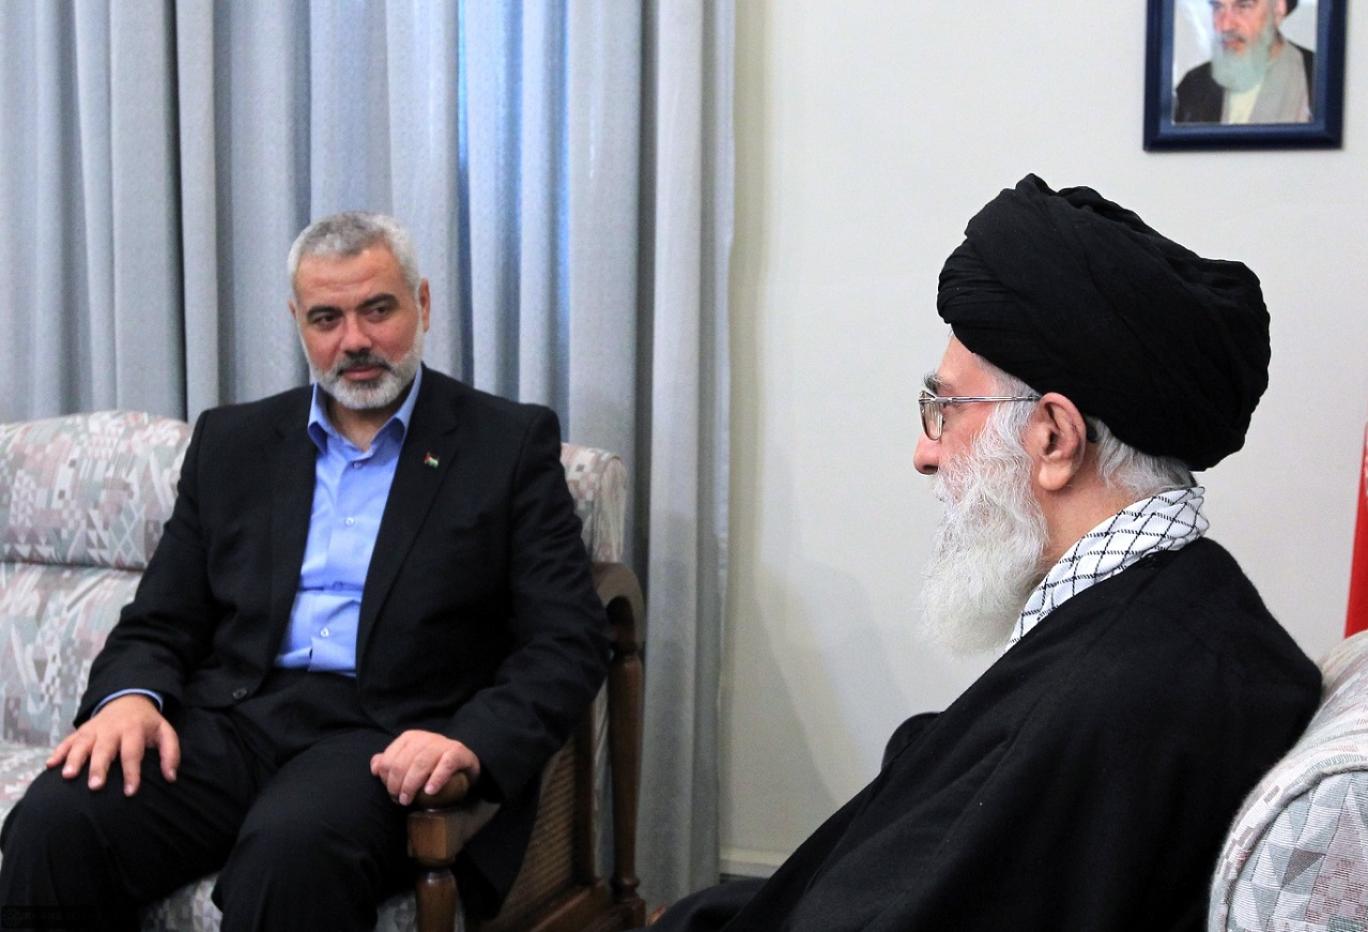 الی کوهانیم(دیپلمات آمریکایی-ایرانی)جمهوری اسلامی نمیخواهدبپذیرد اسرائیل در حال نابود کردن حماس است